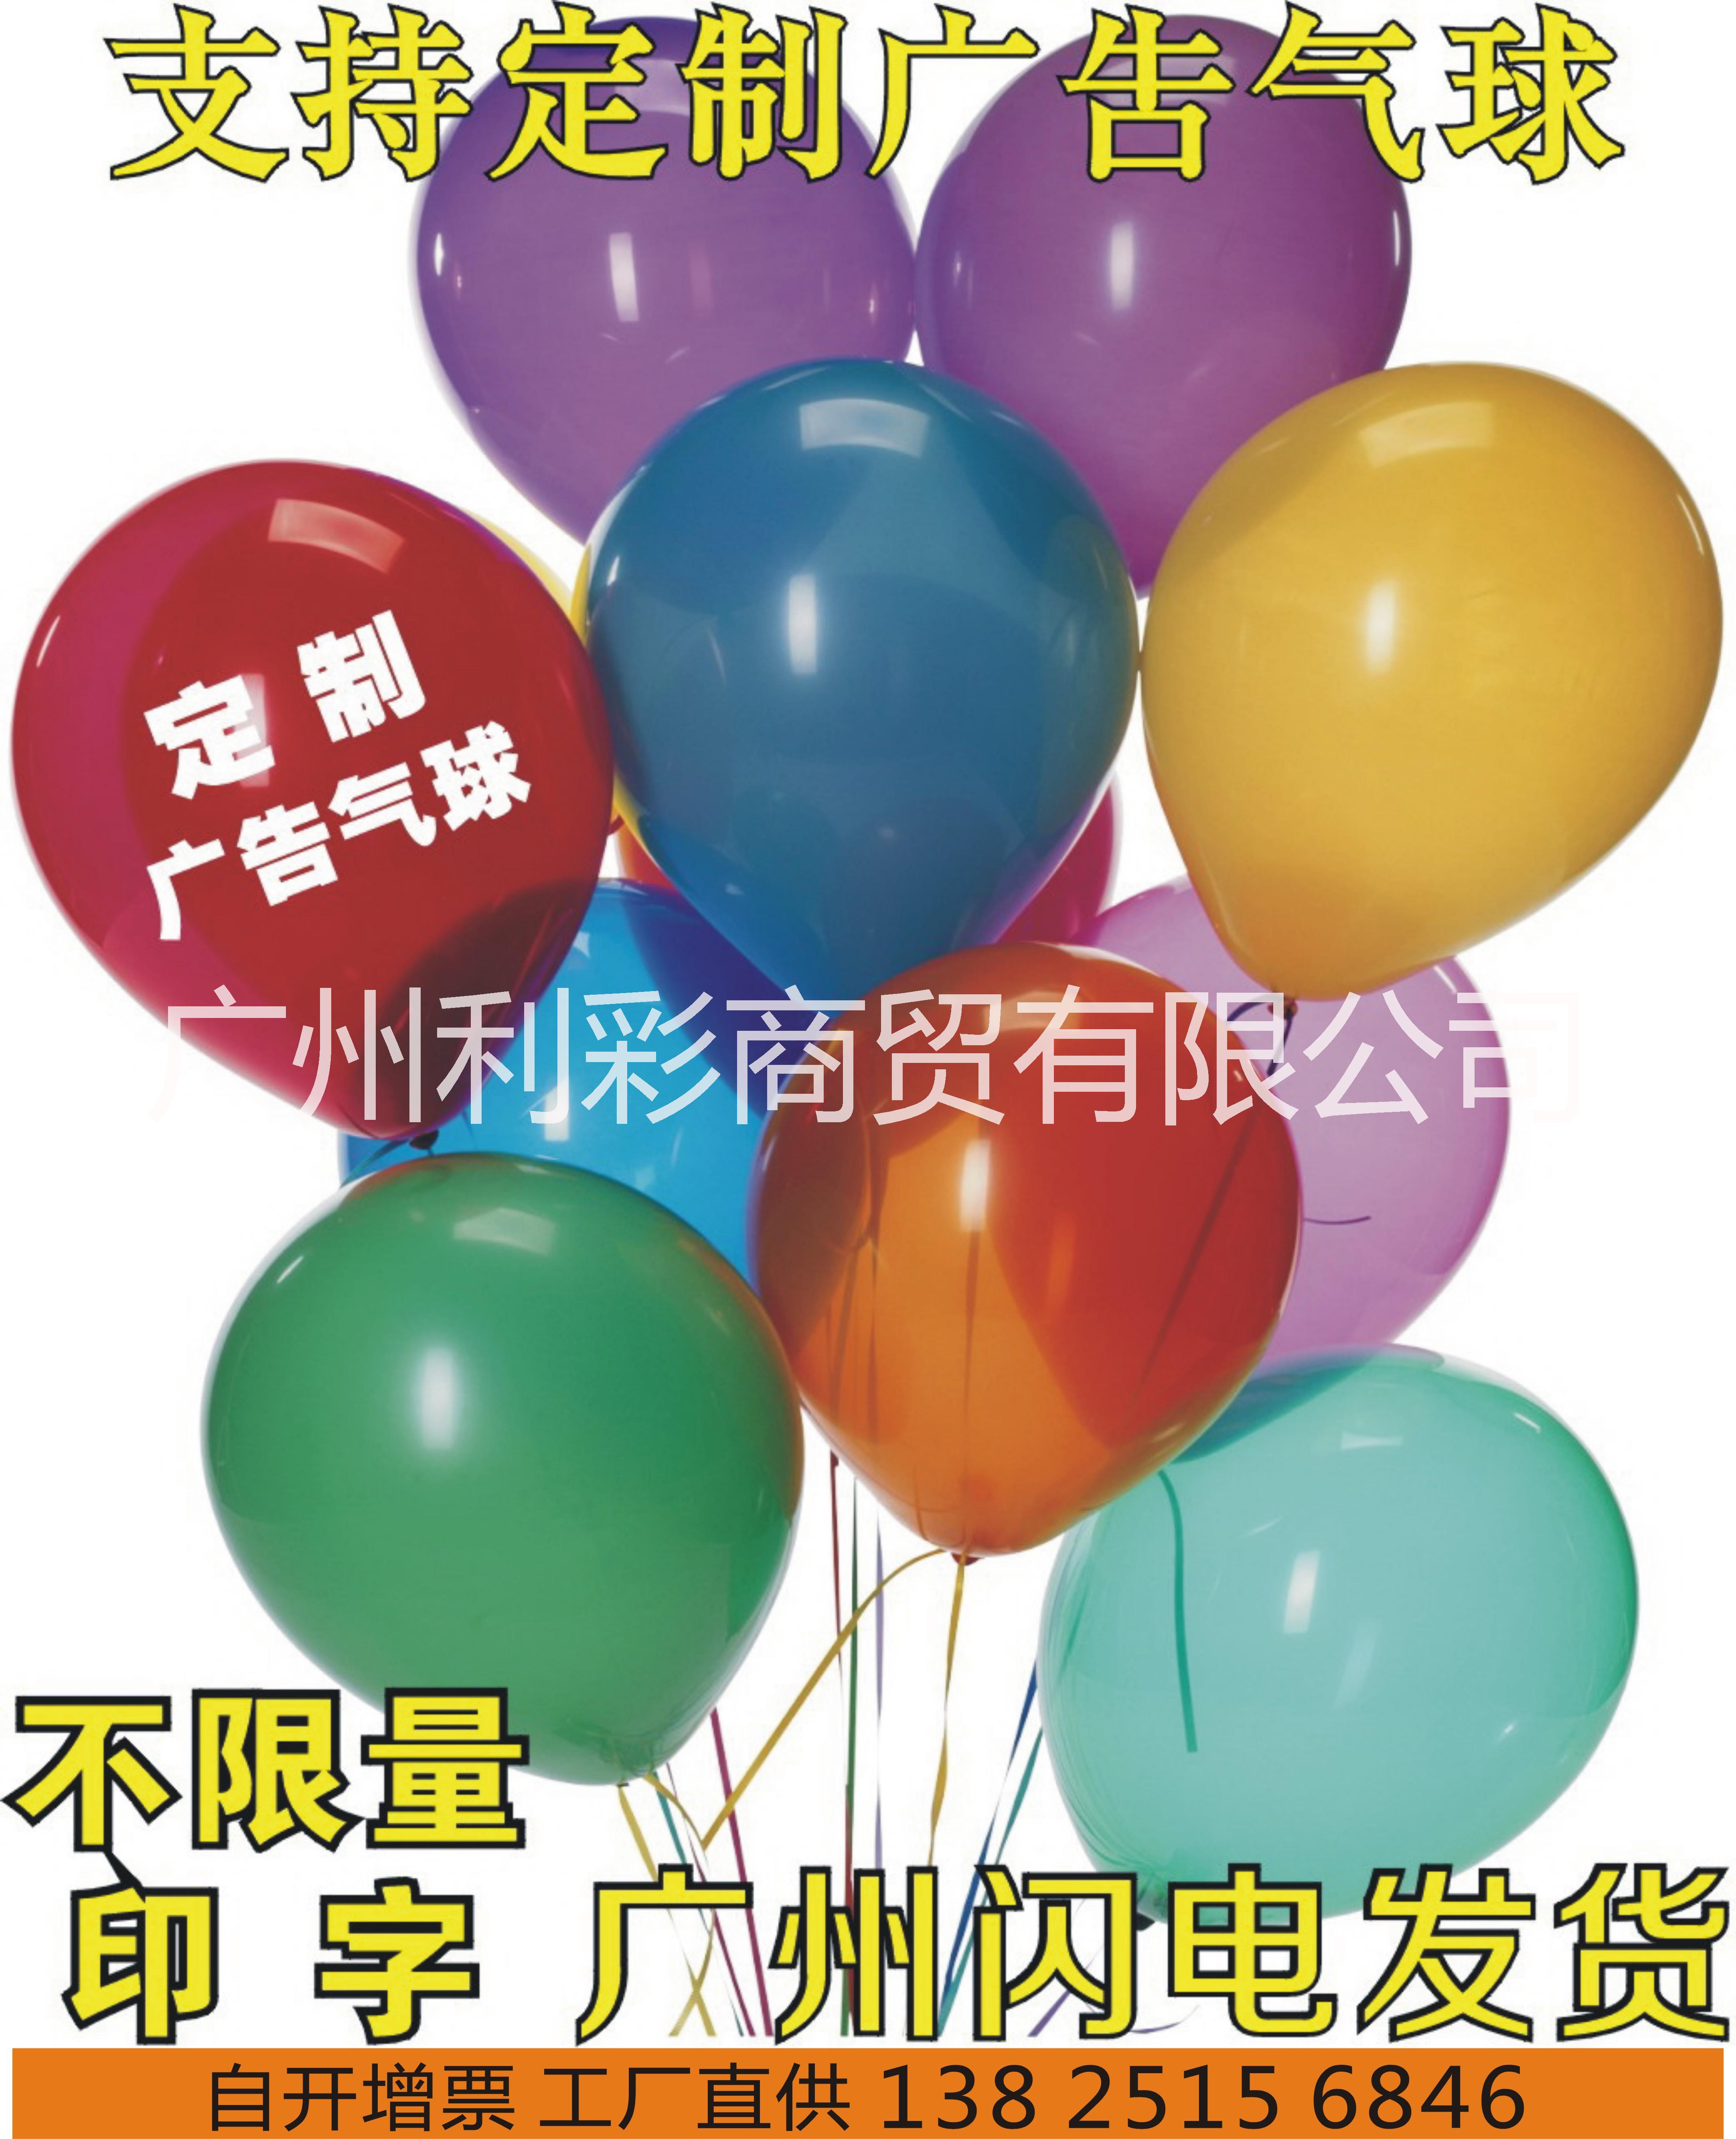 广州广告气球厂家  气球拱门定制 广告气球厂家报价 广东广告气球厂家图片